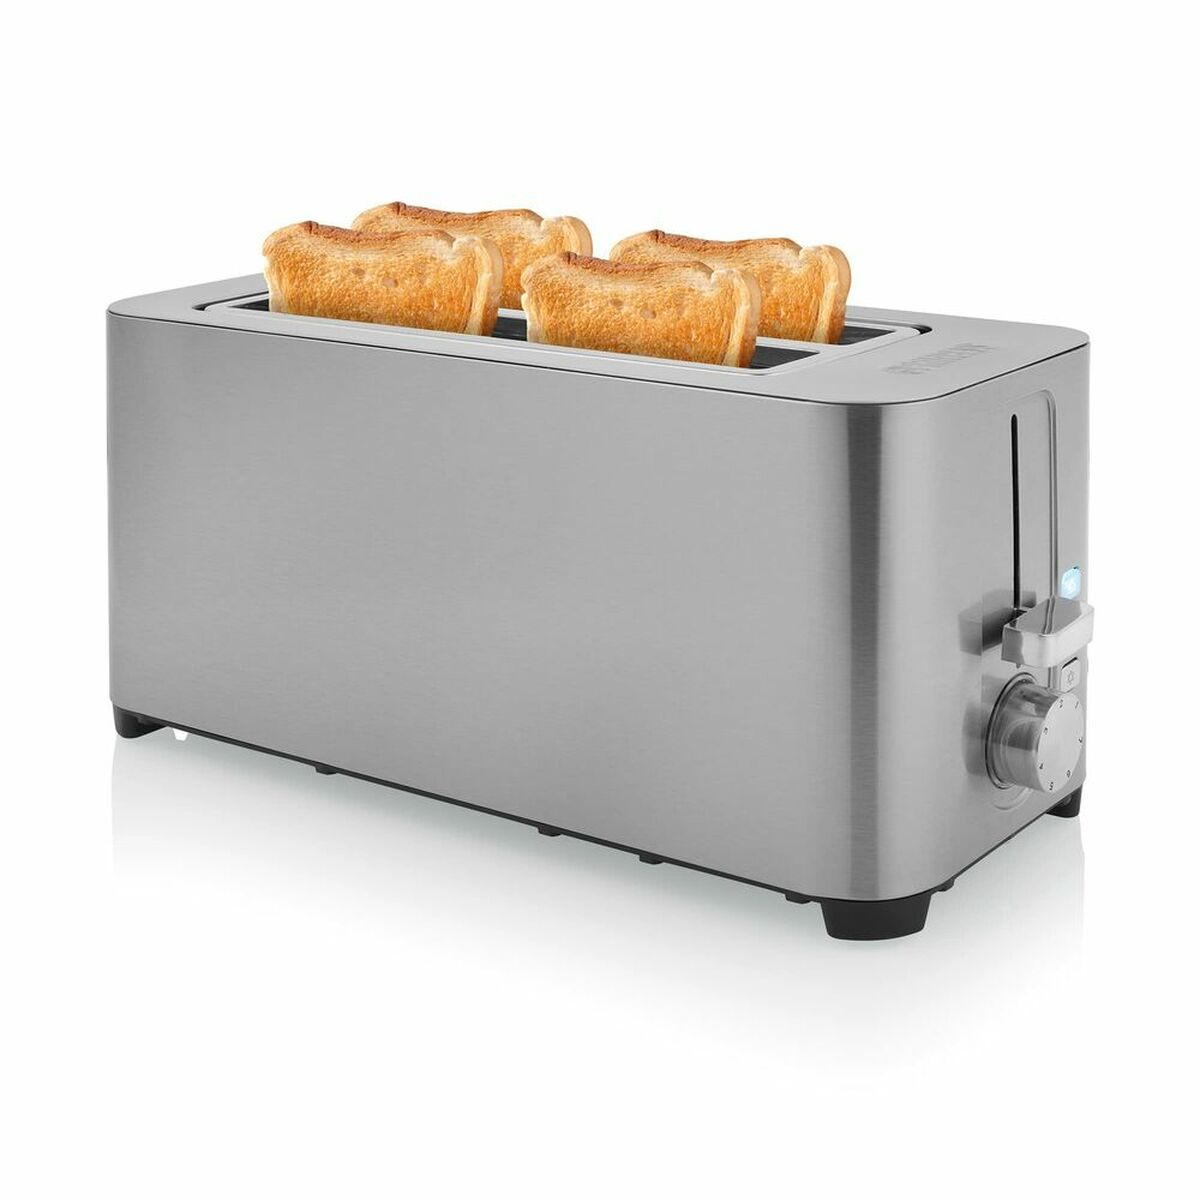 Toaster Princess 01.142402.01.001 1400W 1400 W - CA International 